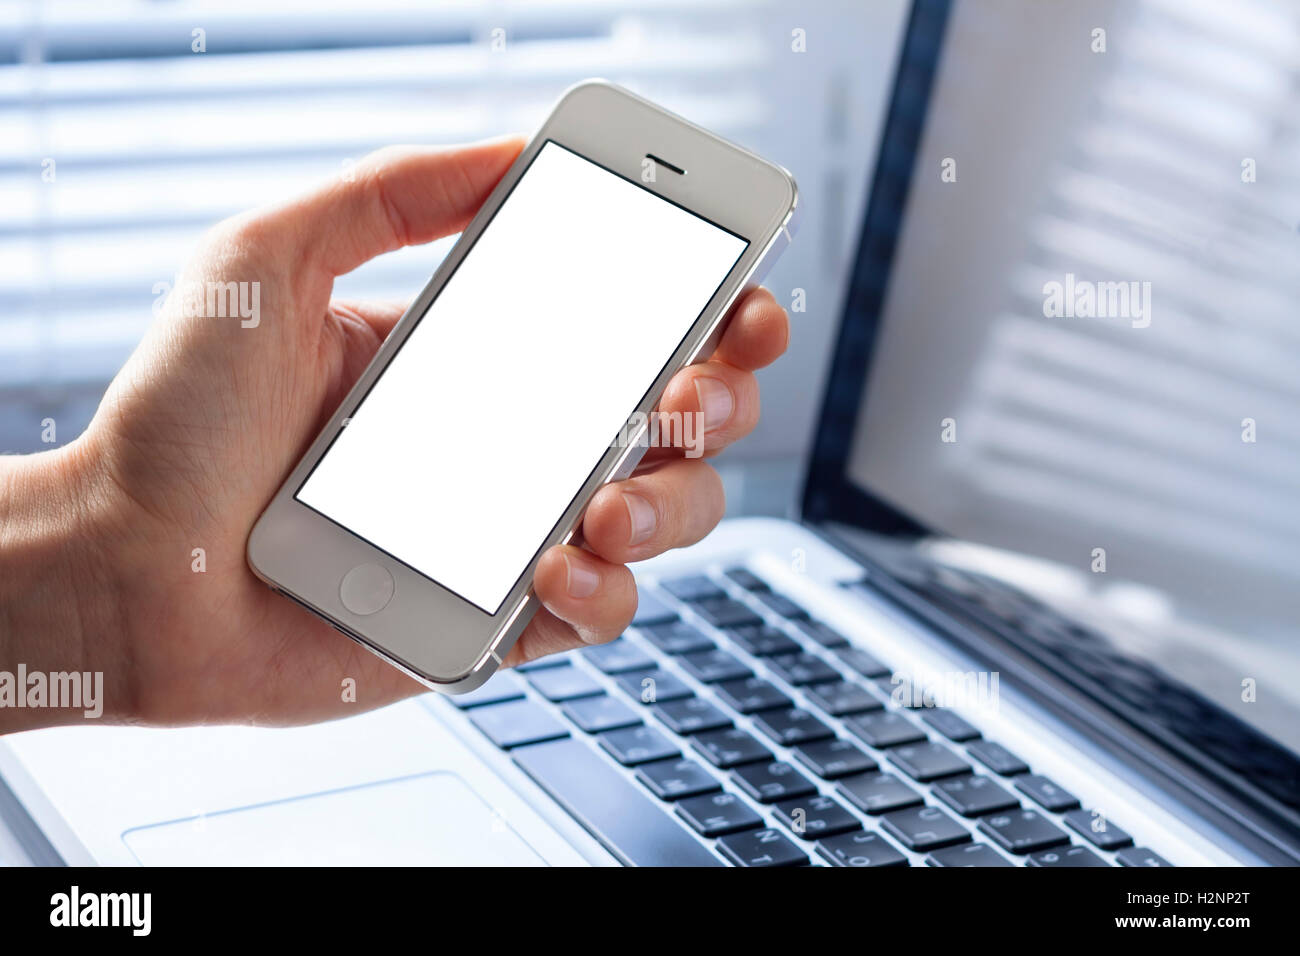 Smartphone avec écran blanc dans la main de business woman working in office with laptop Banque D'Images